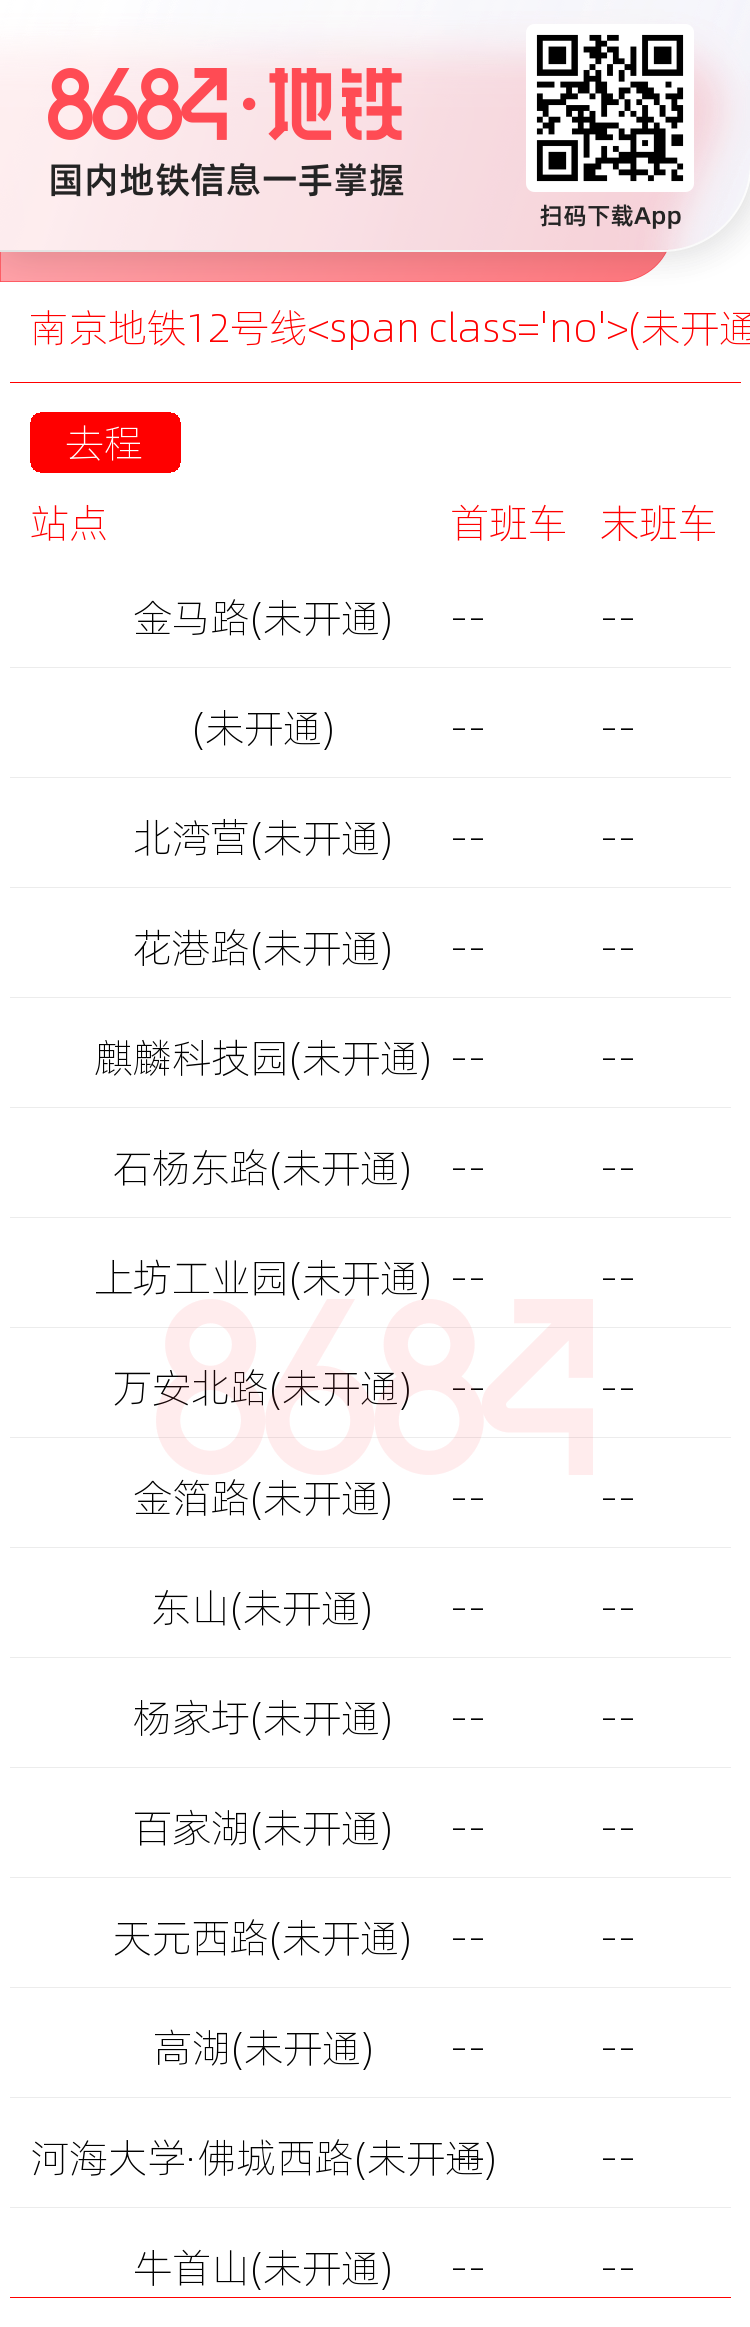 南京地铁12号线<span class='no'>(未开通)</span>运营时间表